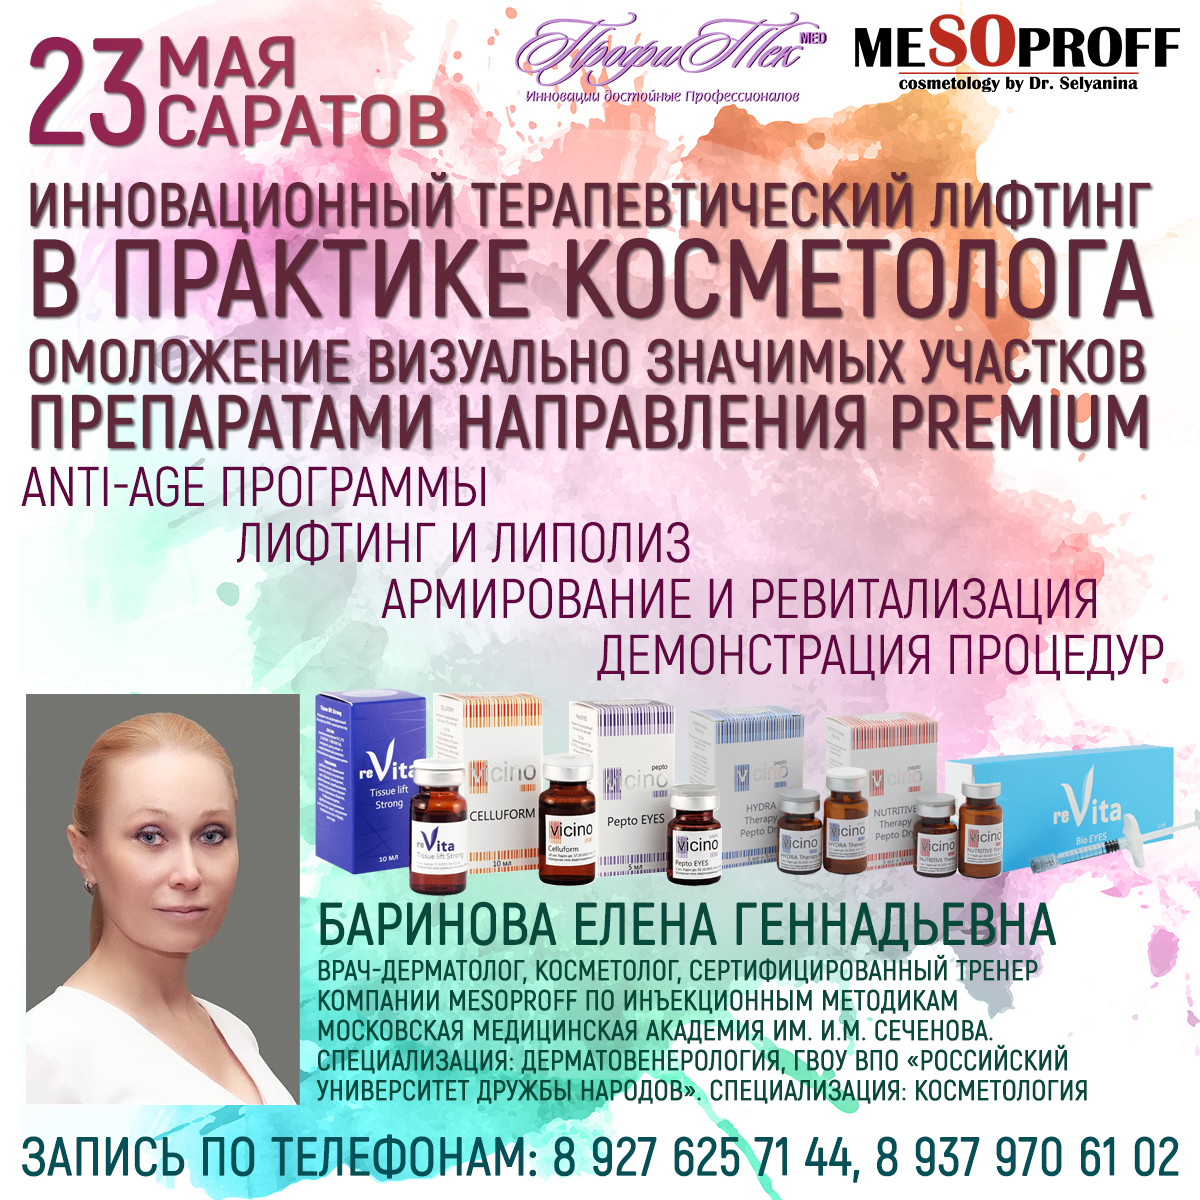 23 мая, Саратов, Пептиды в косметологии